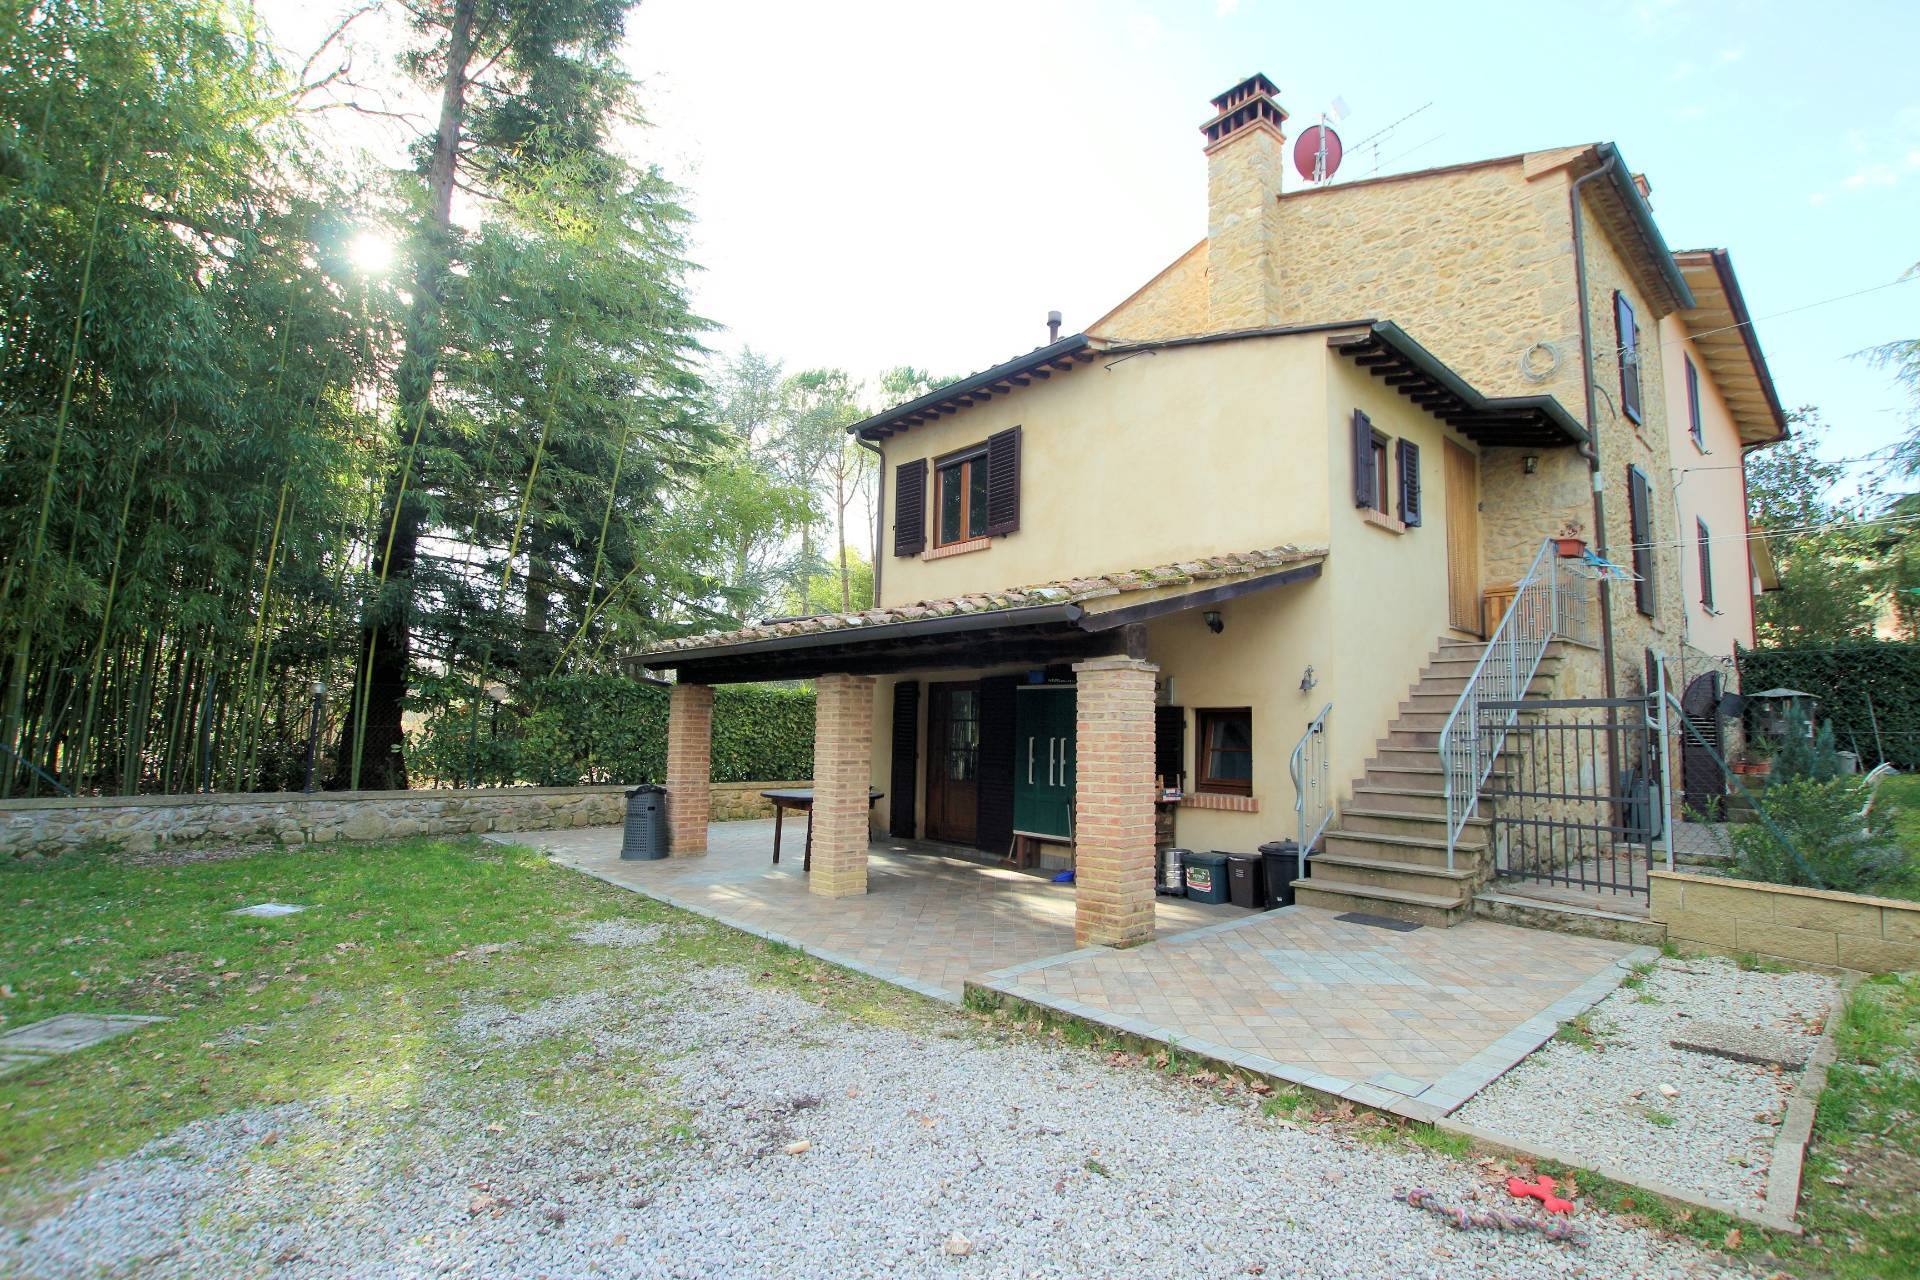 1278-Przione terratetto di casale con ampio giardino-Volterra-1 Agenzia Immobiliare ASIP